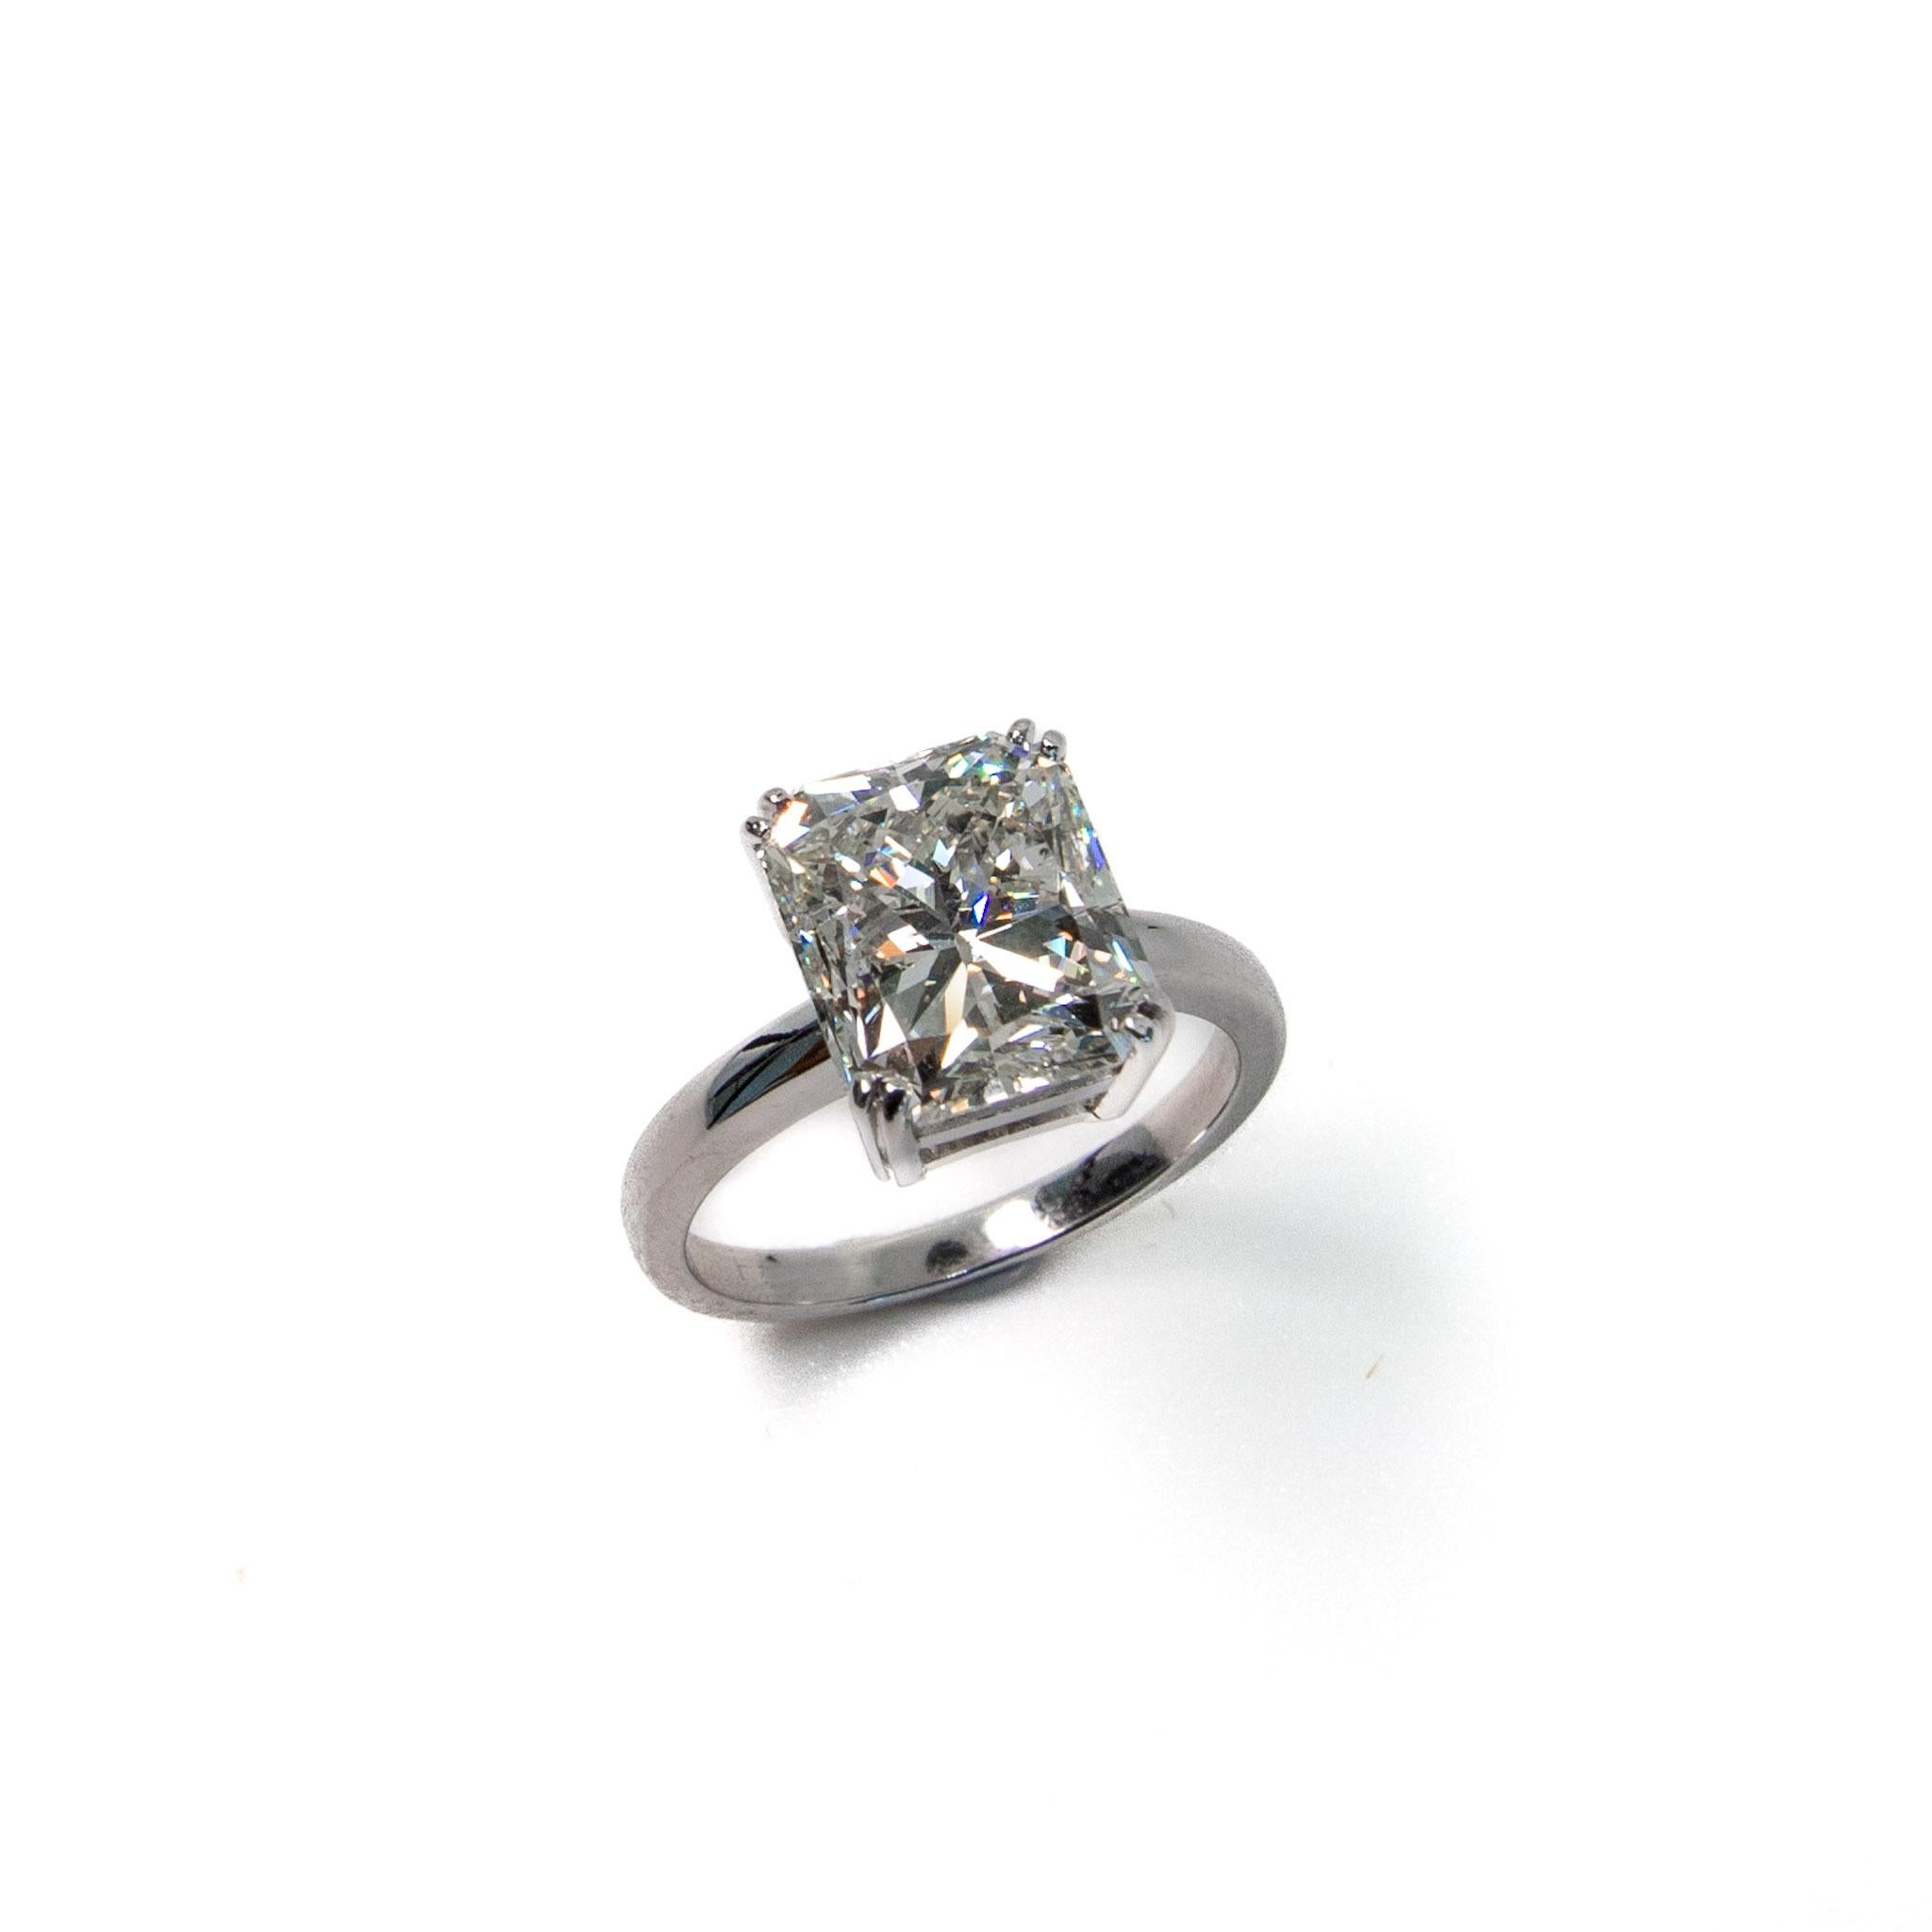 Stunning 5.01ct Diamond Ring. 
EGL Certified as 